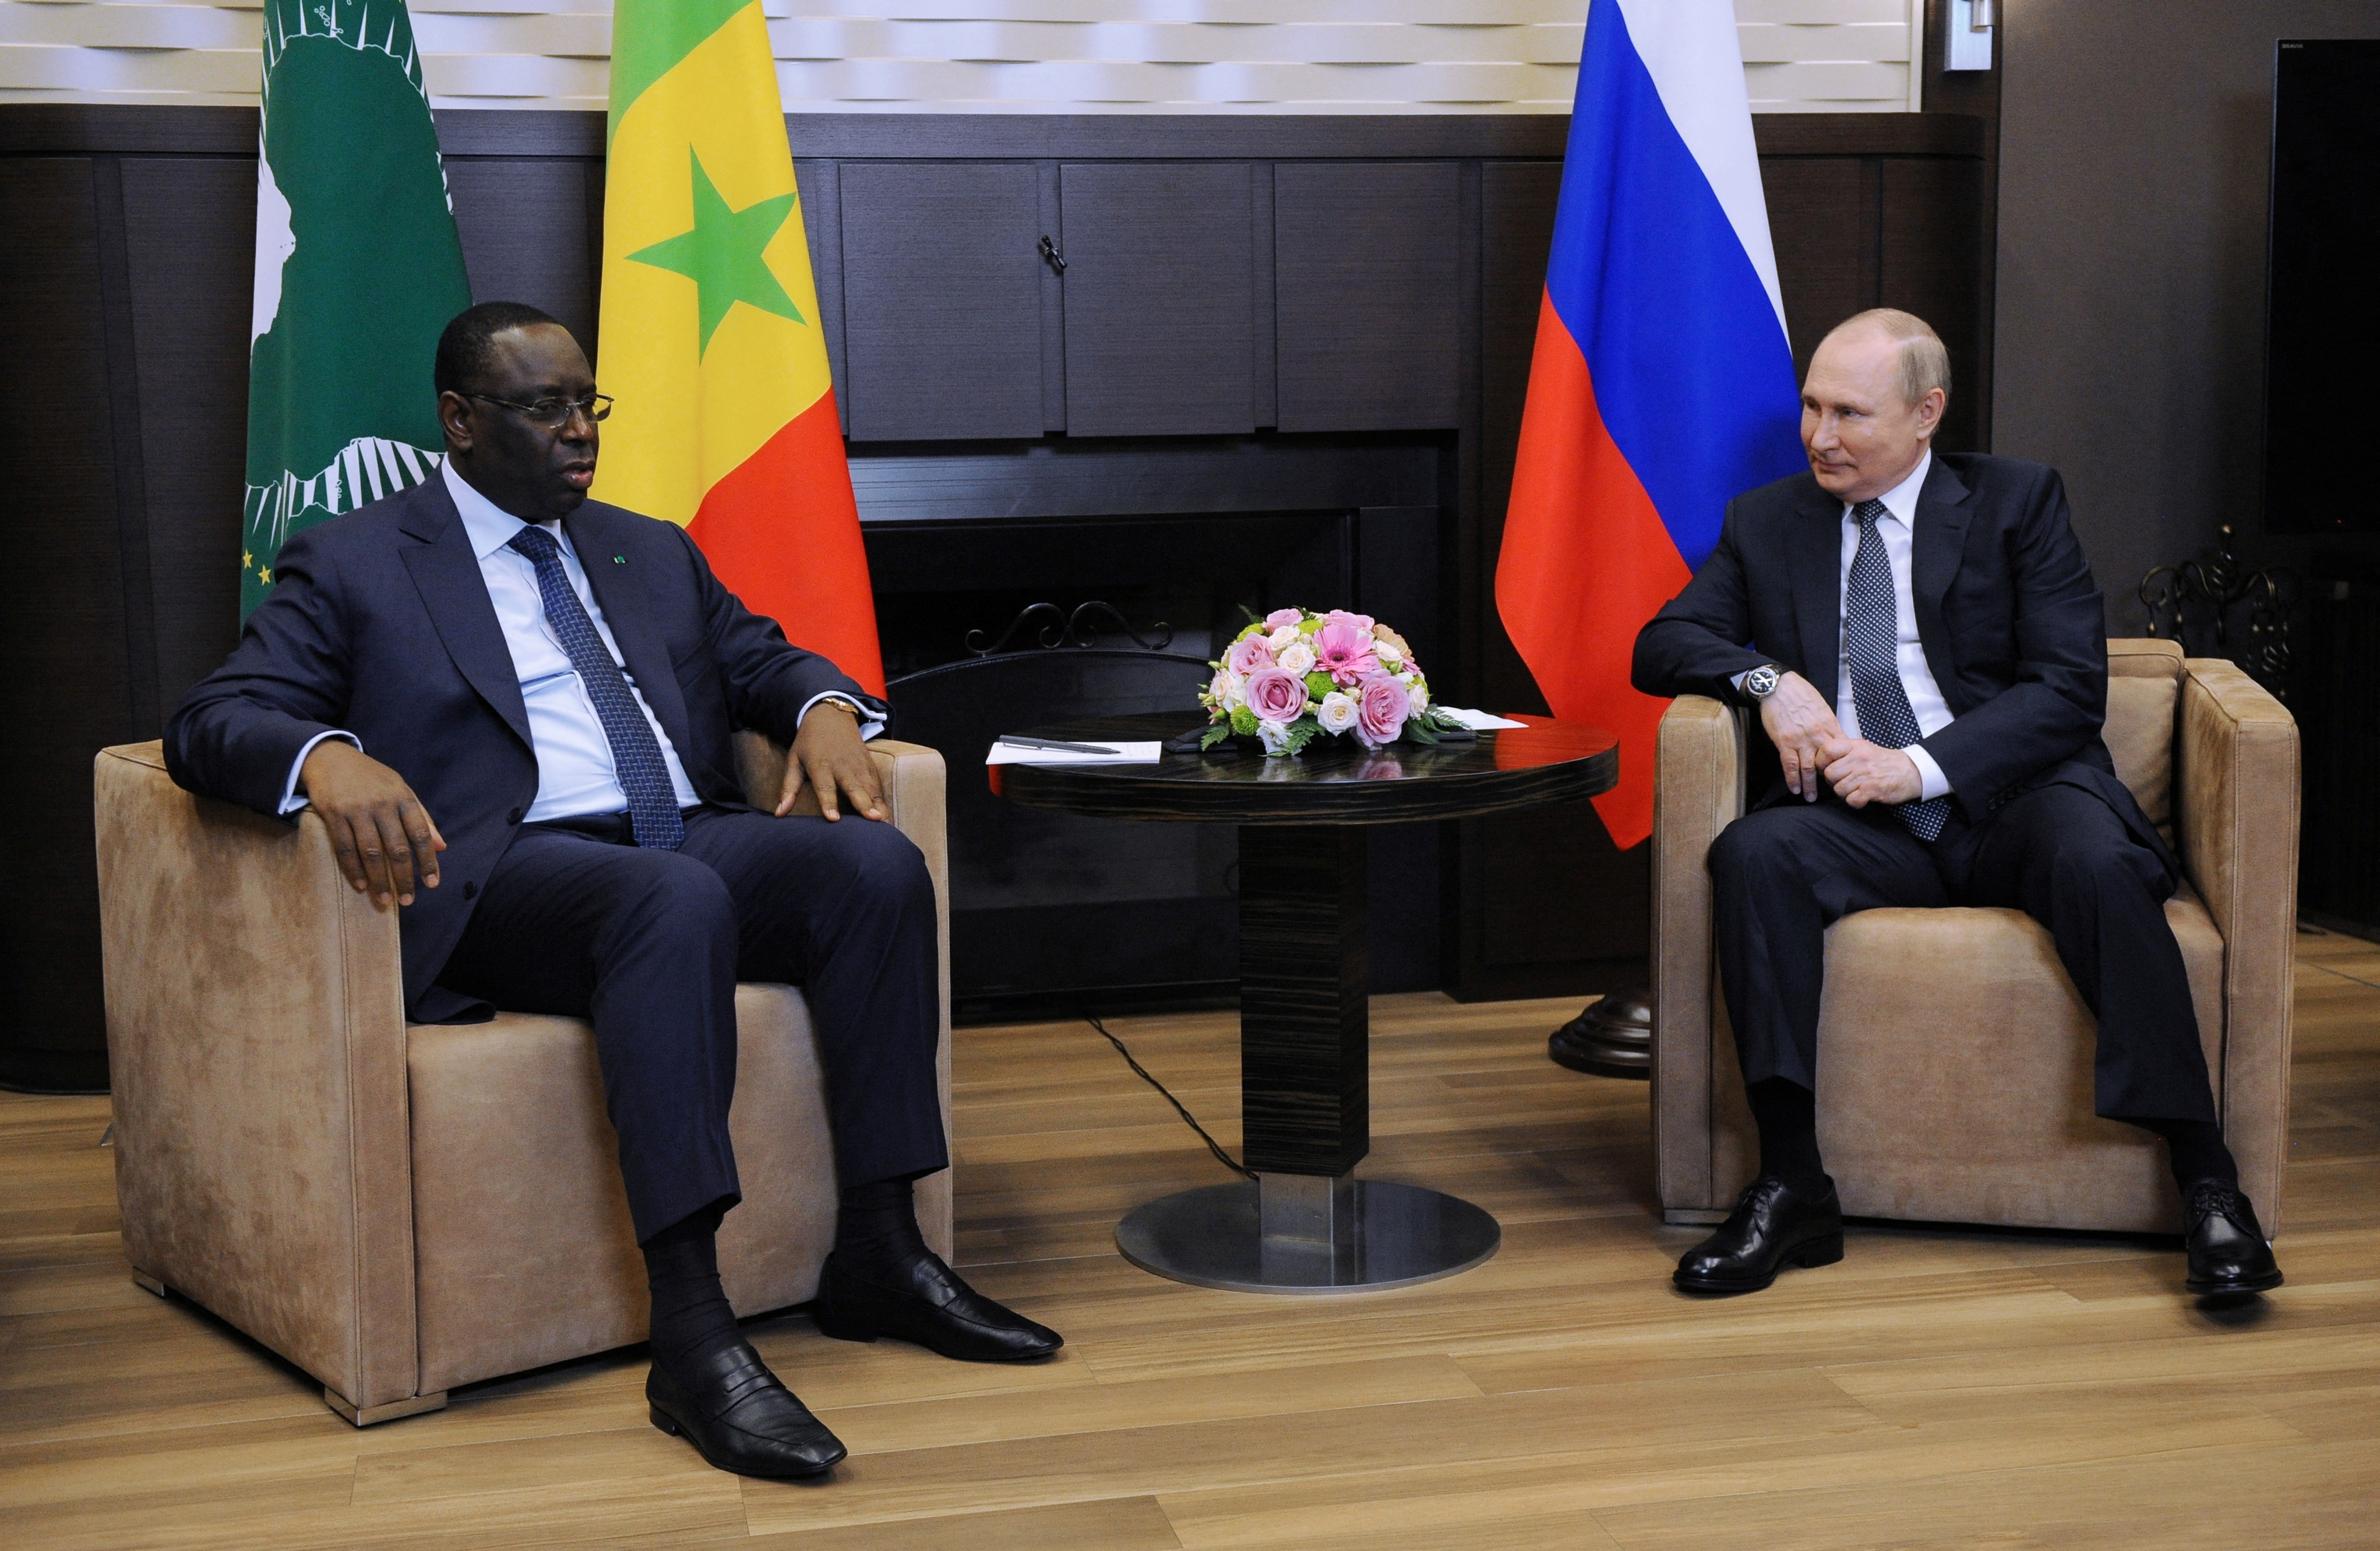 Grain supply tops Putin-African Union head talks' agenda